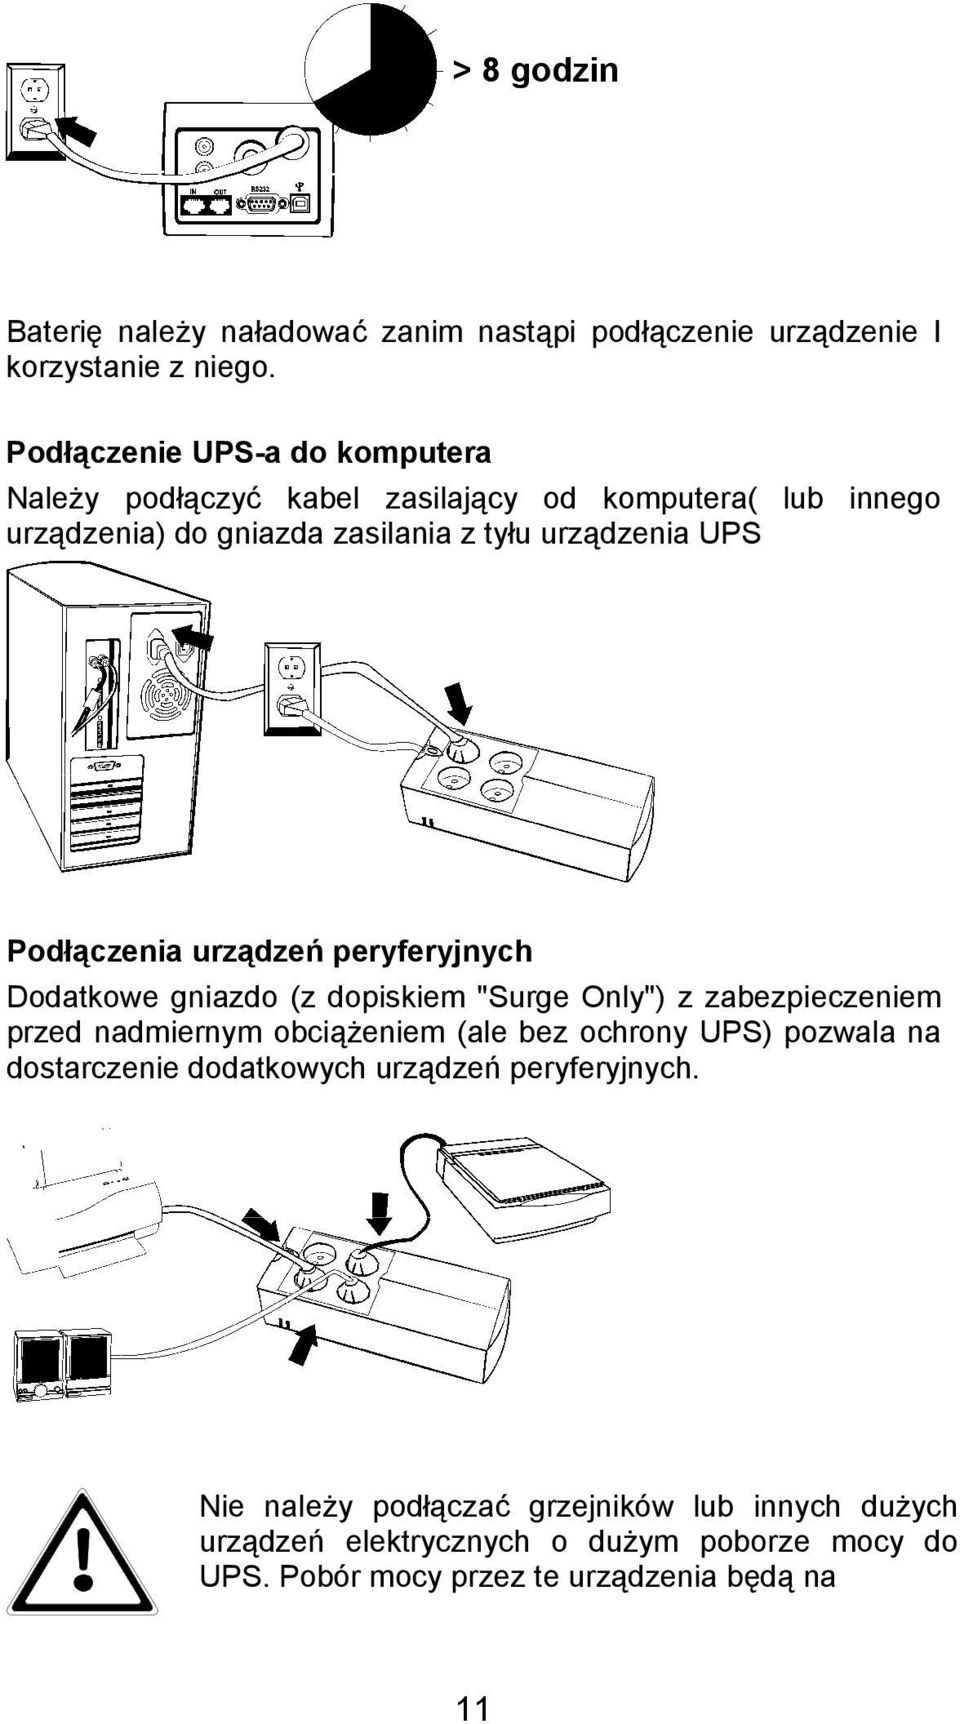 Podłączenia urządzeń peryferyjnych Dodatkowe gniazdo (z dopiskiem "Surge Only") z zabezpieczeniem przed nadmiernym obciążeniem (ale bez ochrony UPS)